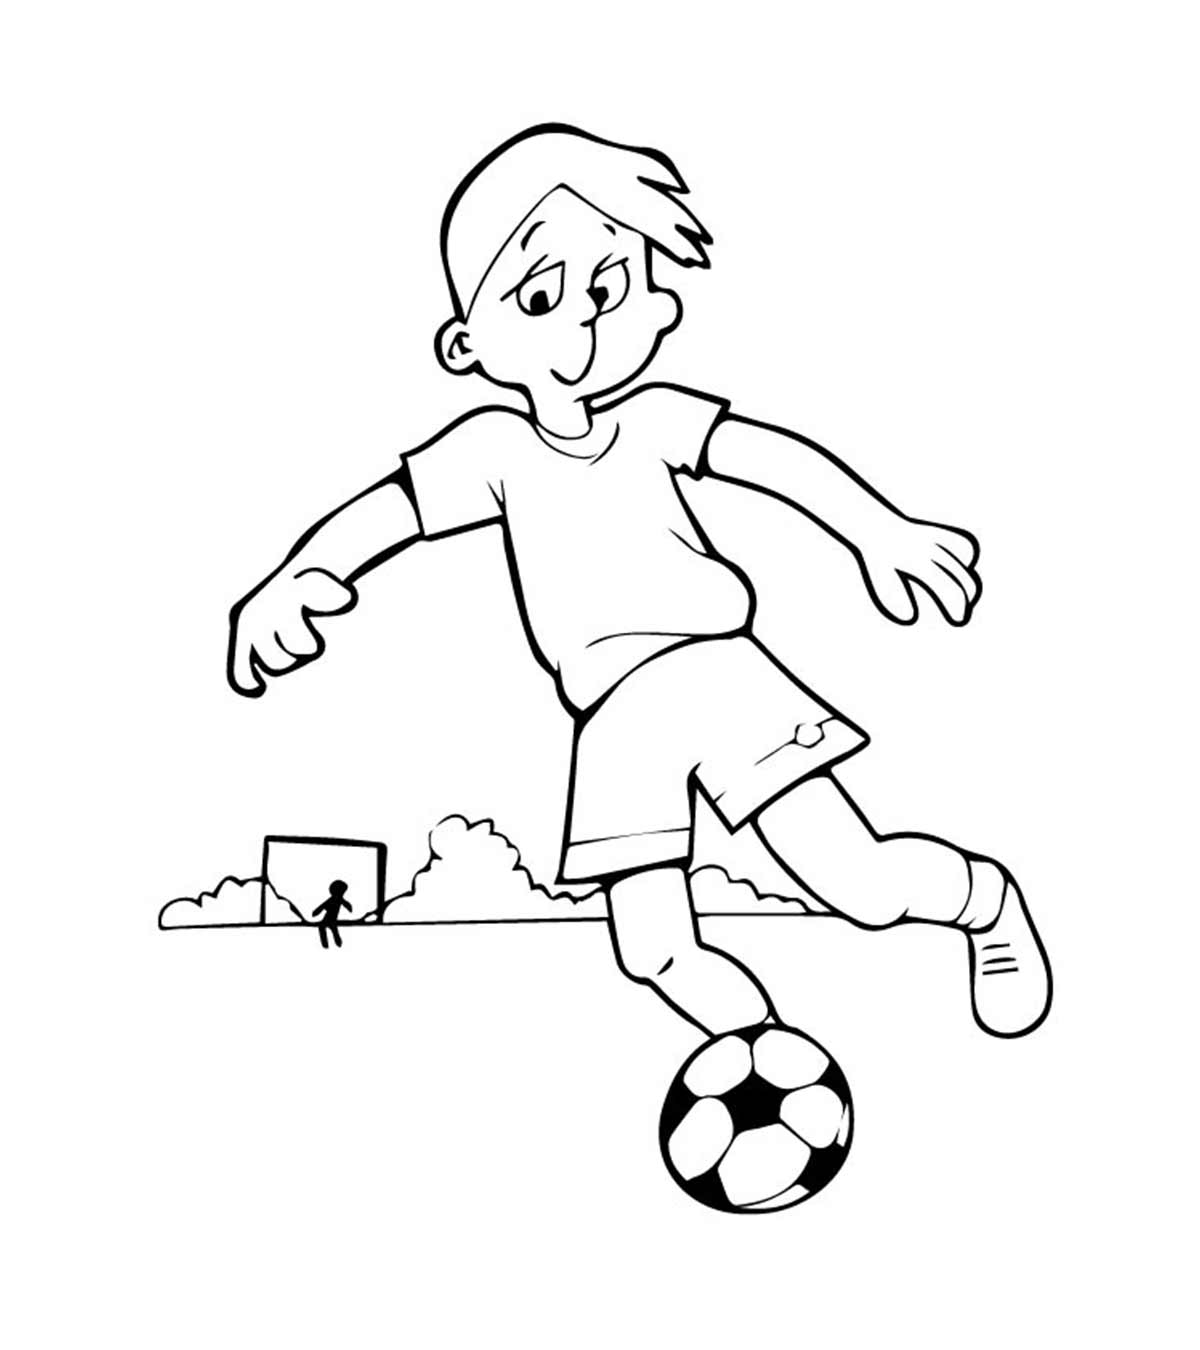 为热爱足球的孩子们准备的25个流行的足球涂色页